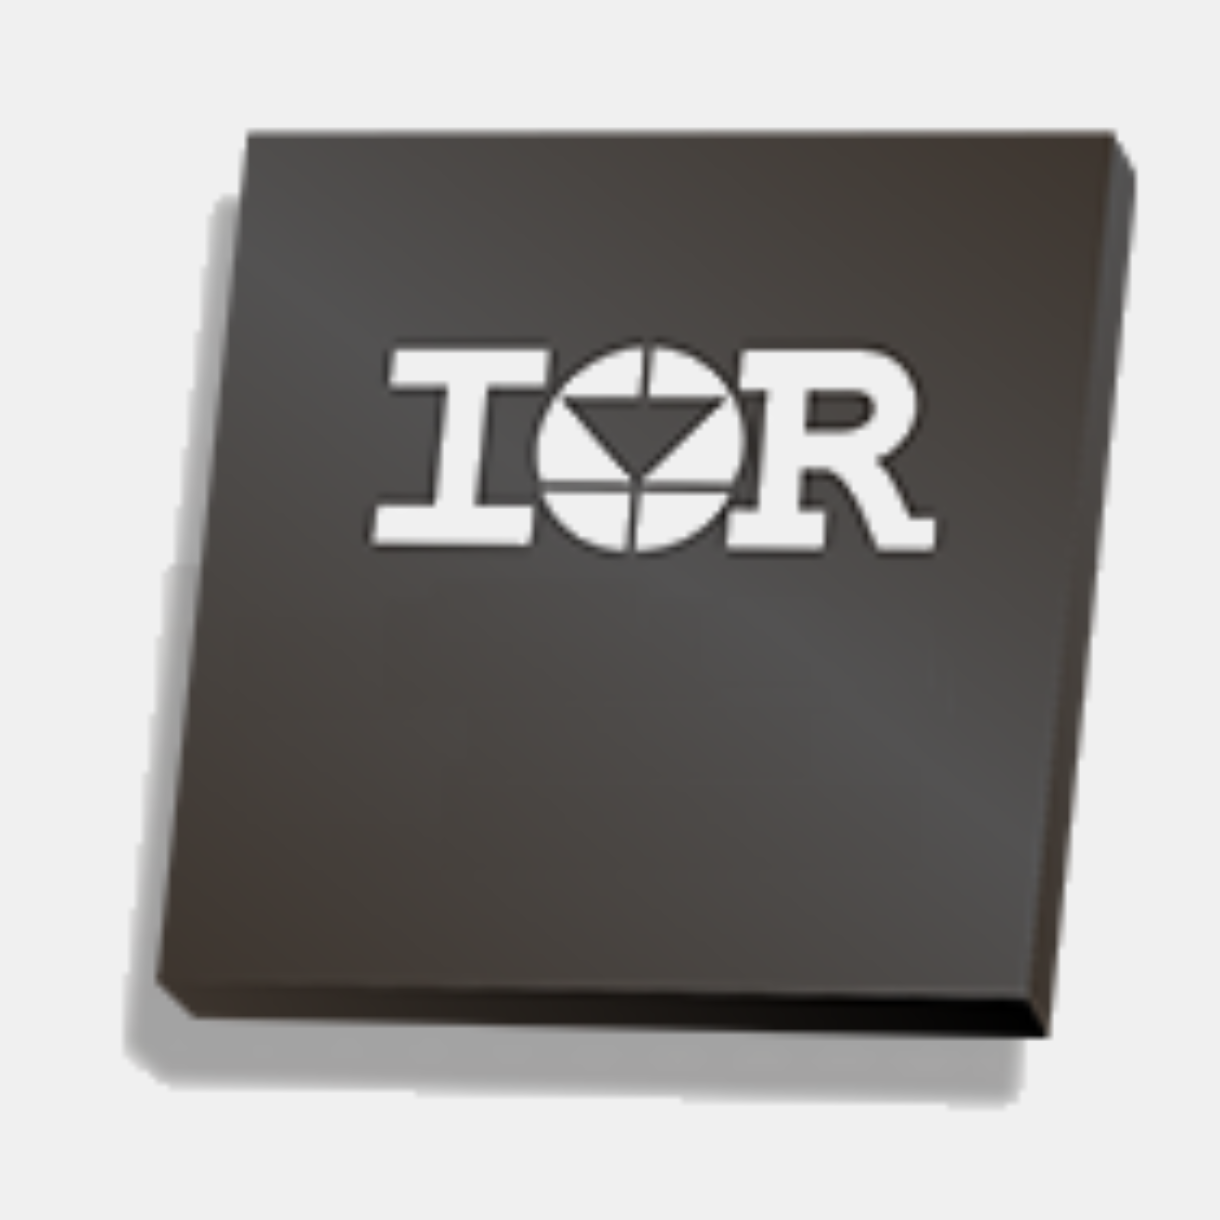 IR3579A - Infineon Technologies